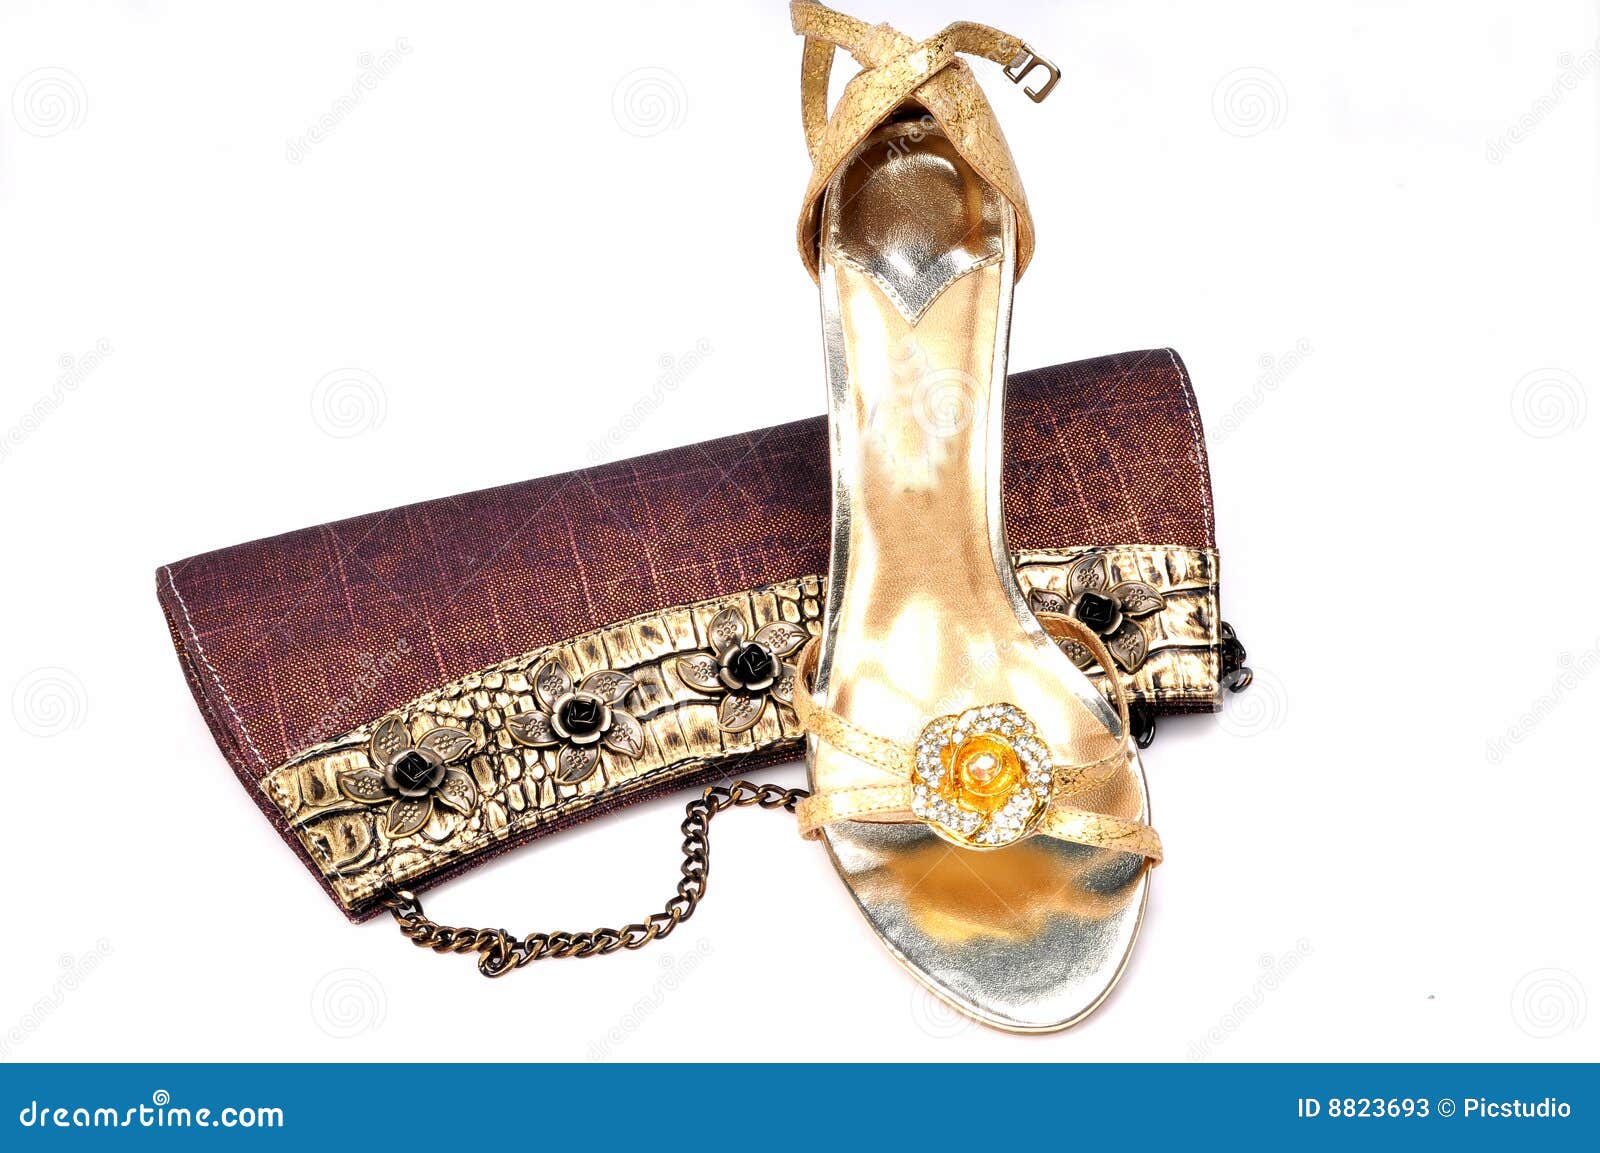 ladies purse footwear 8823693